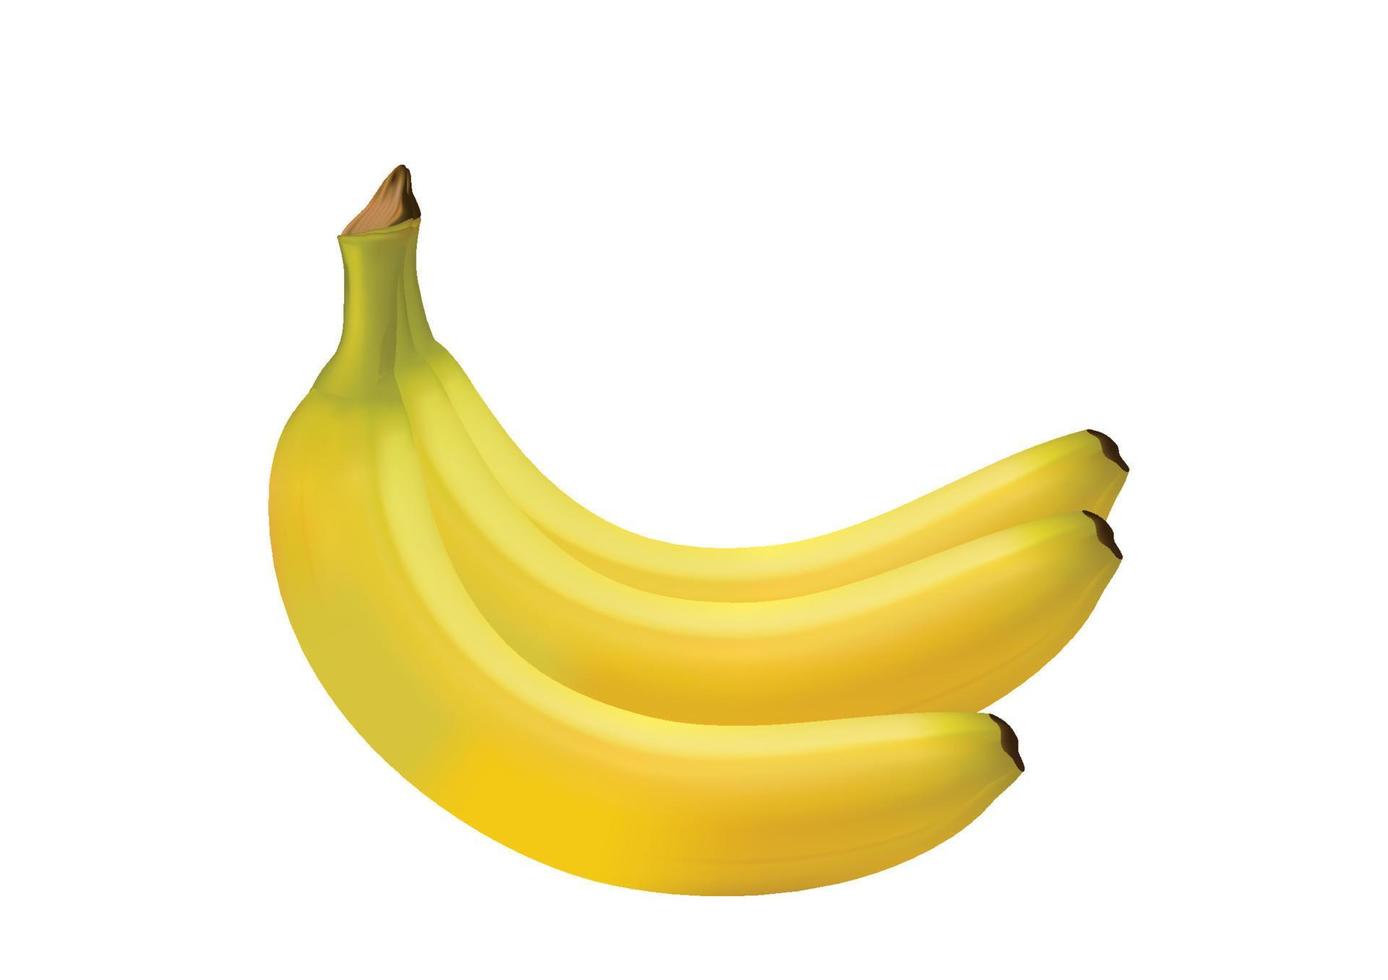 bananes mûres réalistes fruits jaunes frais pour une alimentation saine les fruits sucrés sont pleins de vitamines. vecteur d'illustration isolé